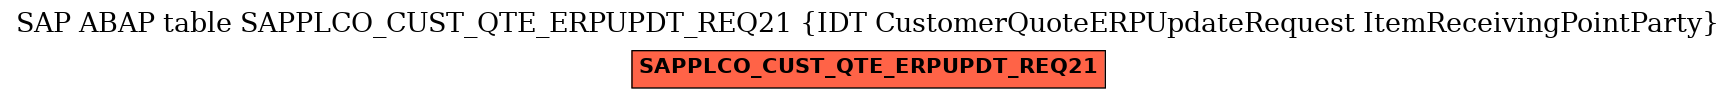 E-R Diagram for table SAPPLCO_CUST_QTE_ERPUPDT_REQ21 (IDT CustomerQuoteERPUpdateRequest ItemReceivingPointParty)